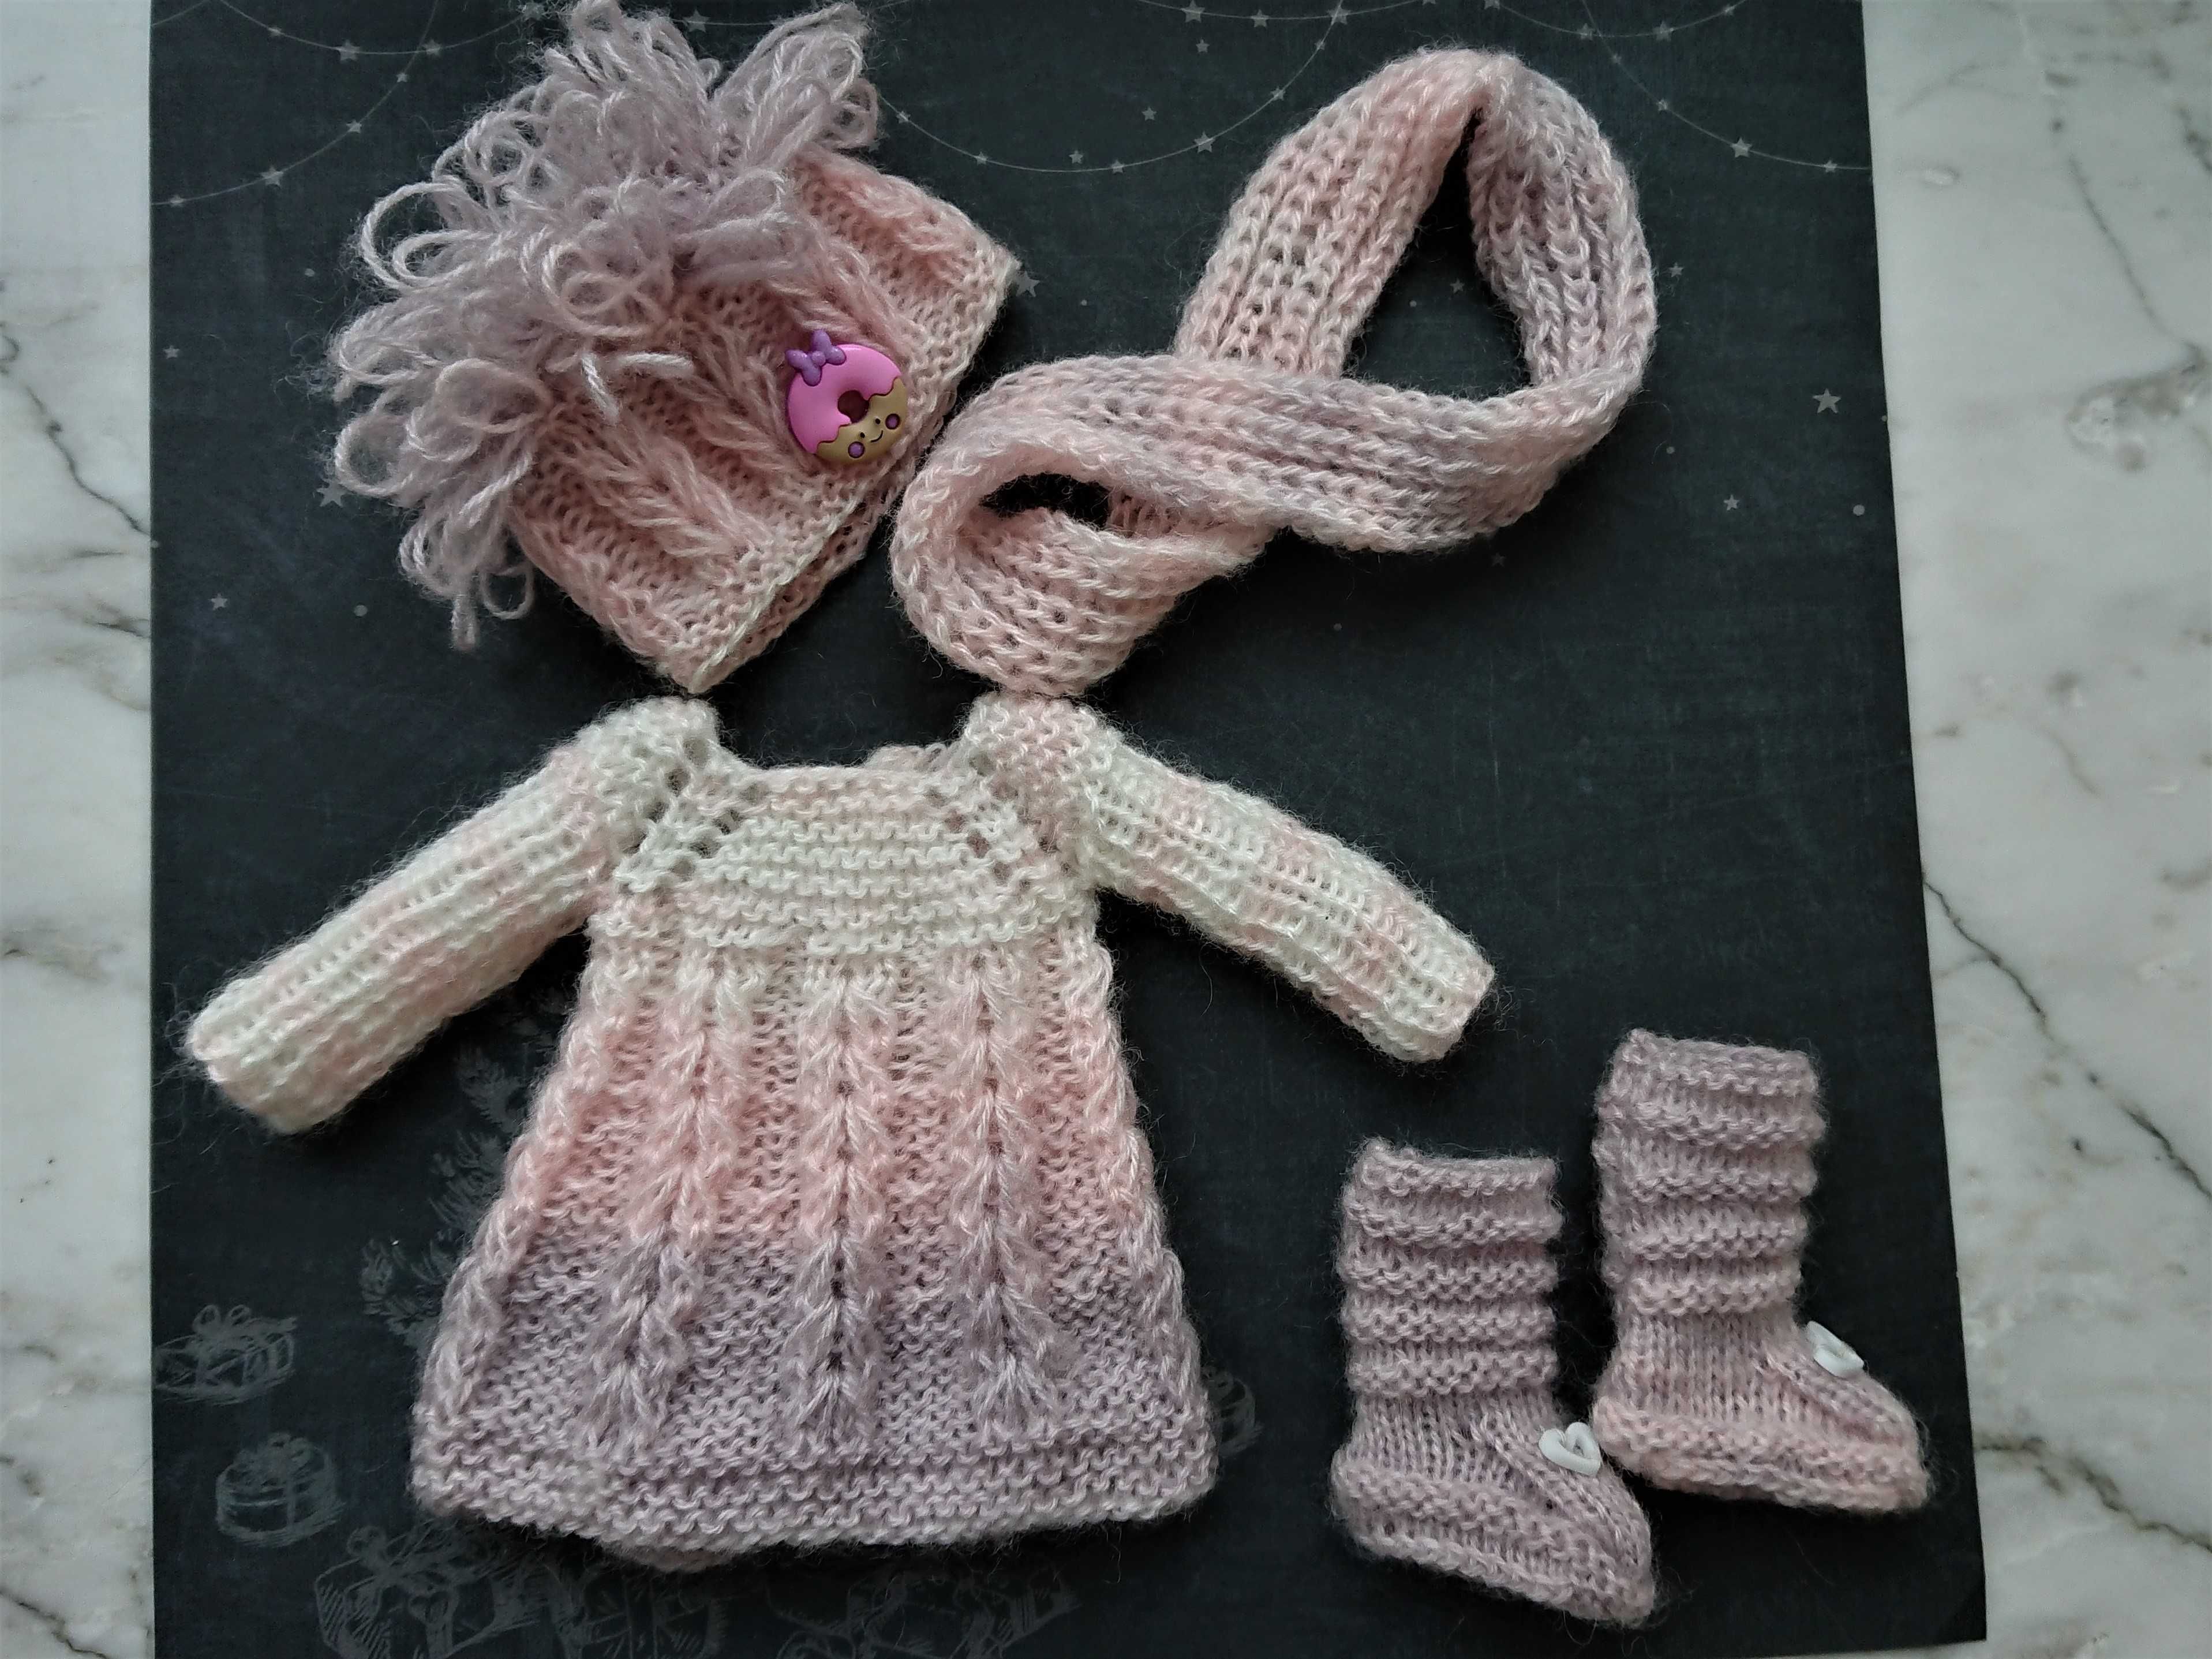 Комплект "Зимова ляля" для ляльки Paola Reina. Одежда для Паола Рейна